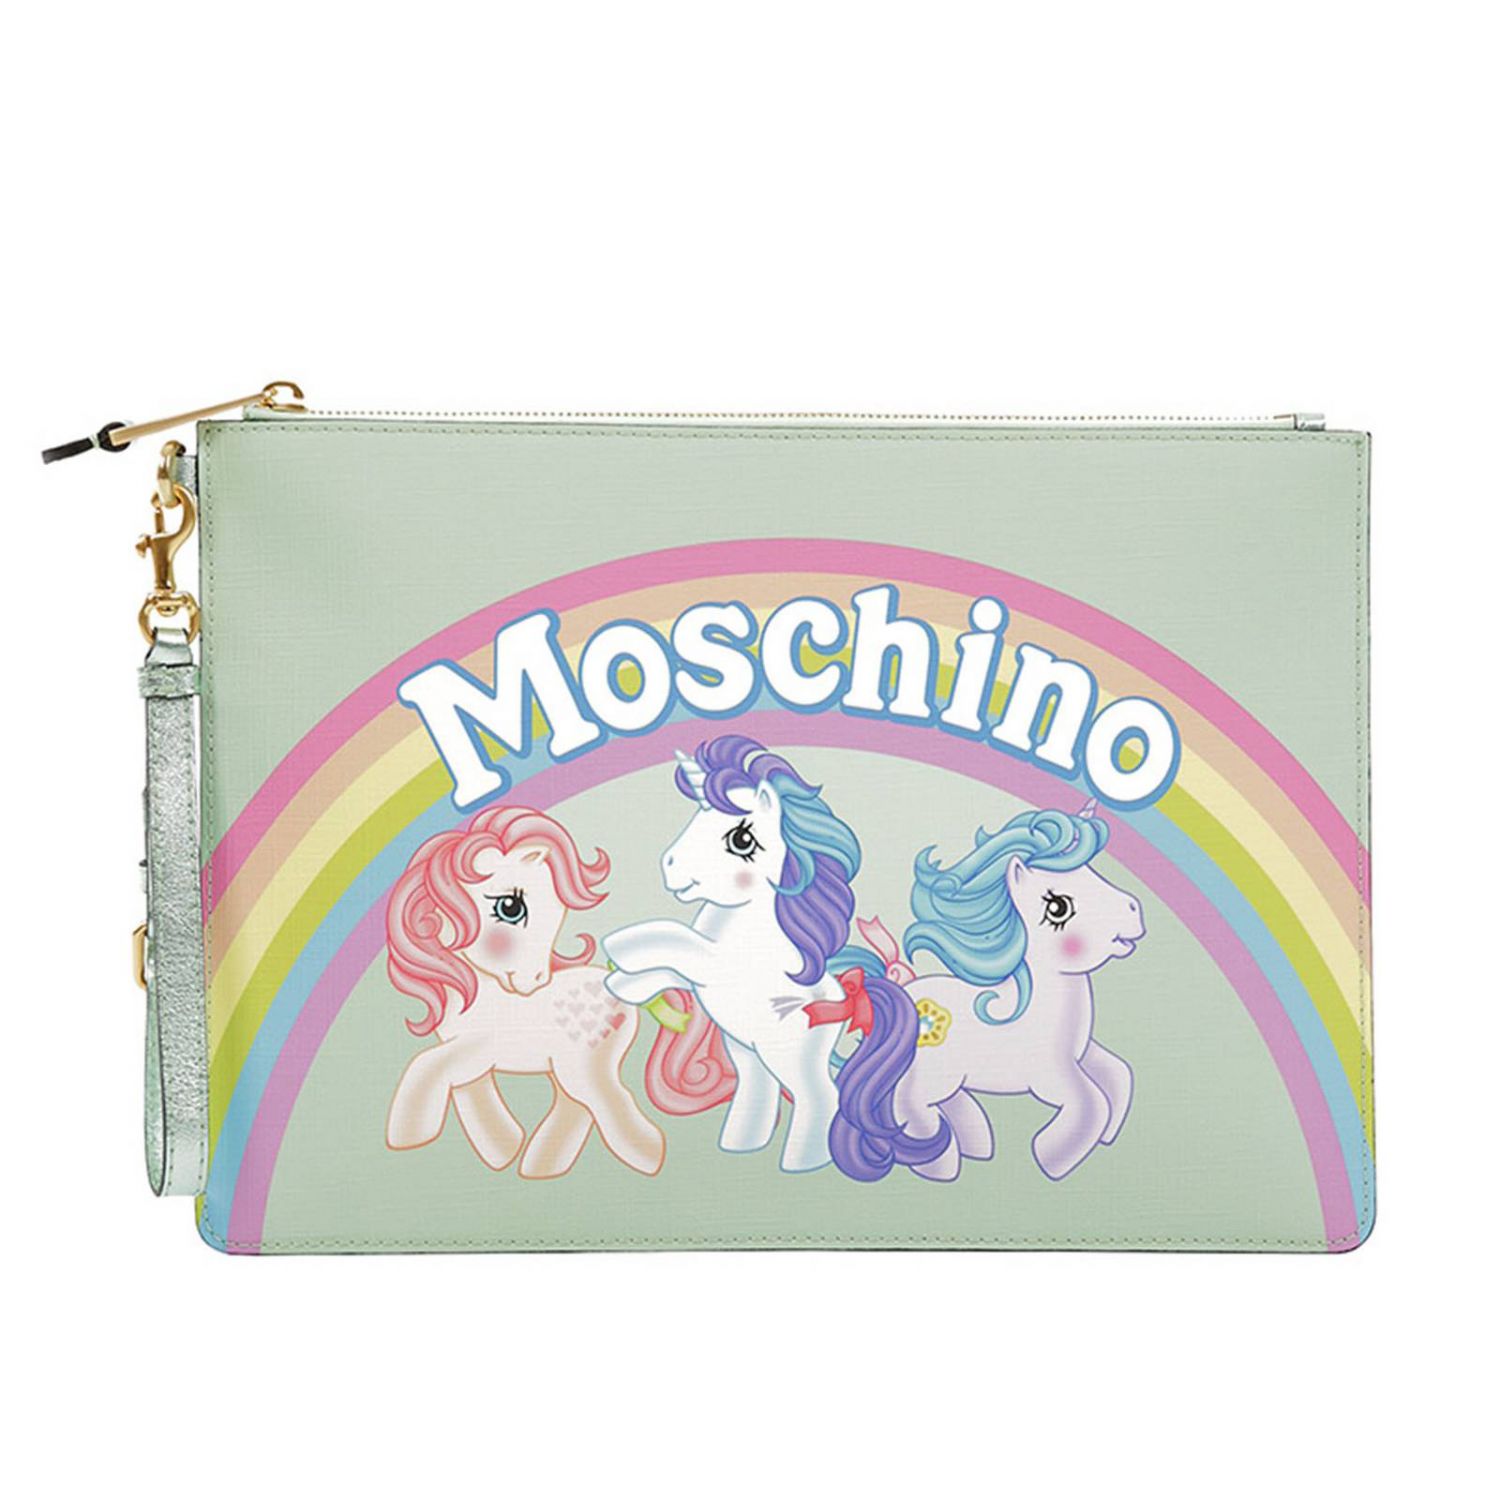 moschino unicorn bag